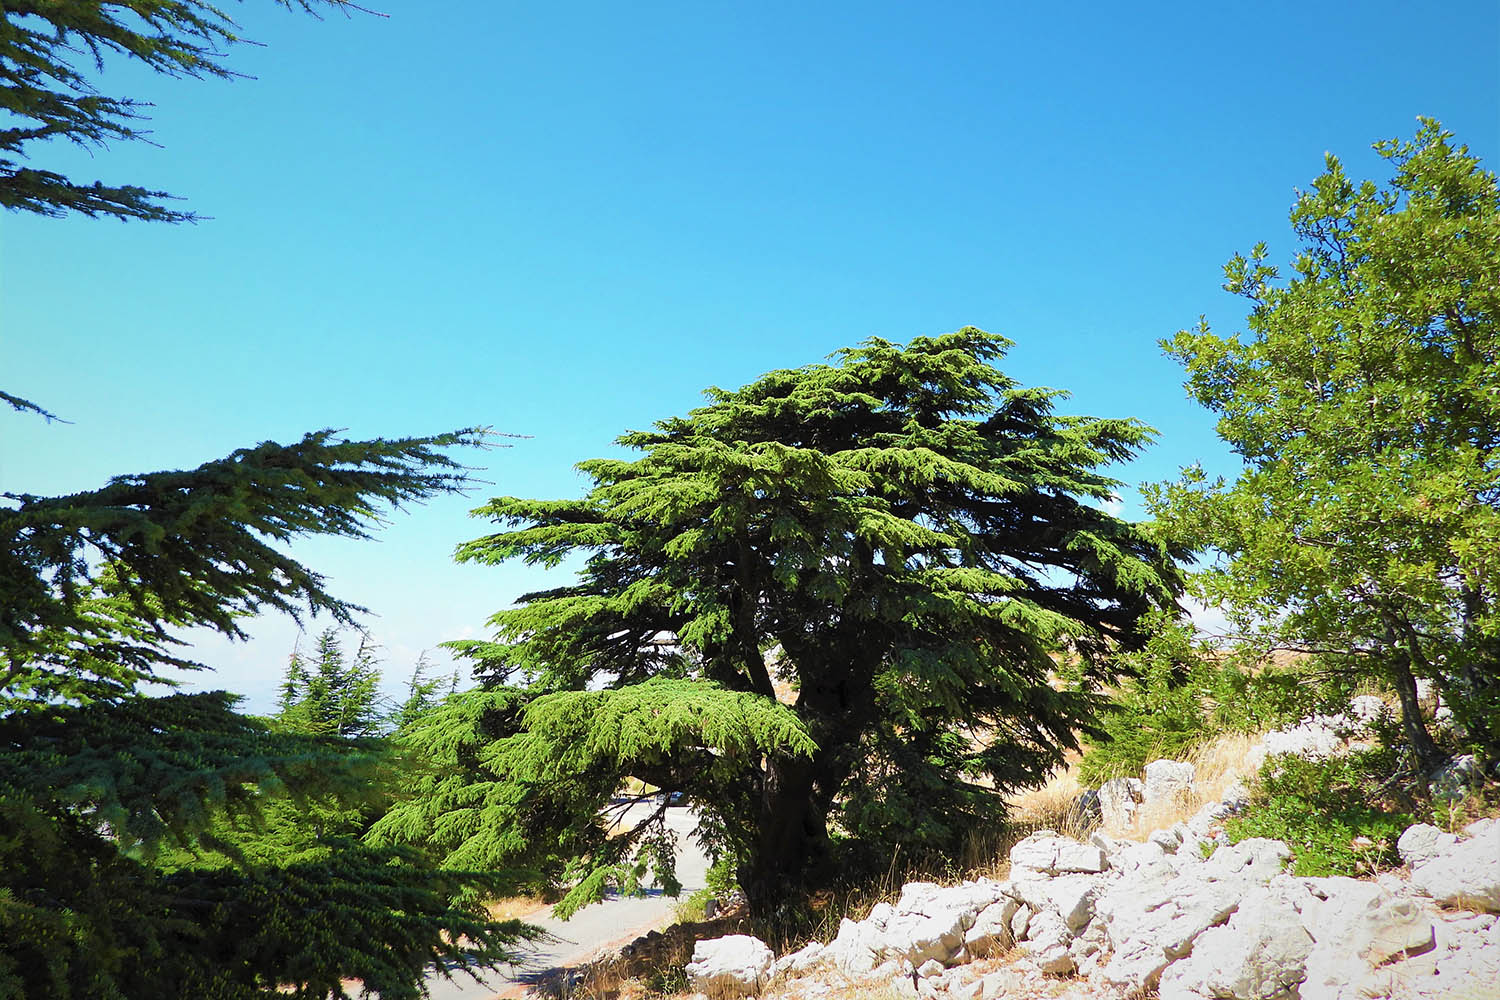 Un cèdre libanais (cedrus libani) dans la réserve. ©Shouf Biosphere Reserve